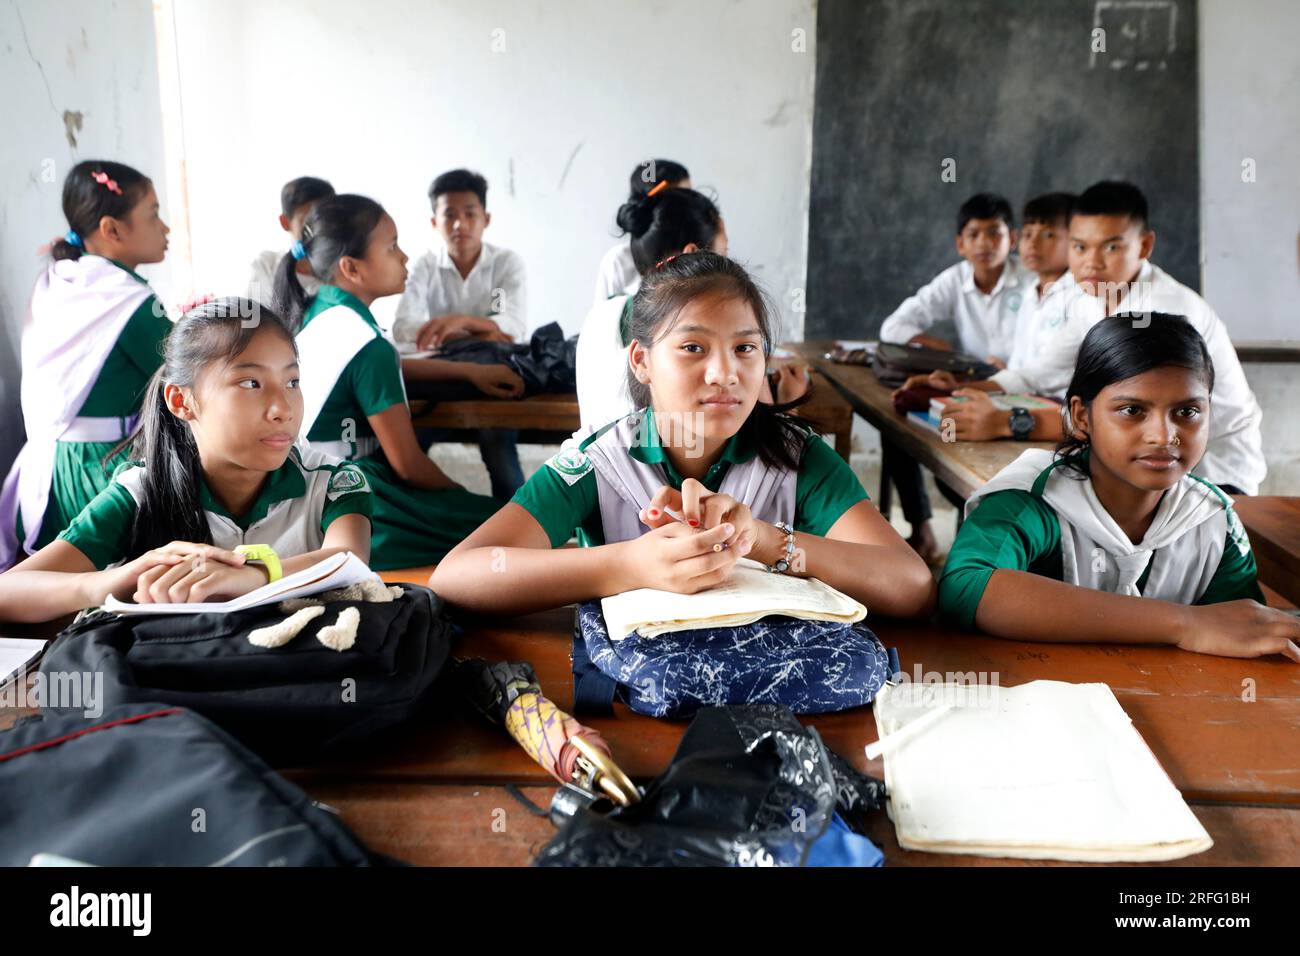 Bandarban, Bangladesch - 27. Juli 2023: Dasselbe Lehrplansystem für Stammes- und bengalische Studenten der hügeligen Regionen Bangladeschs. Stockfoto